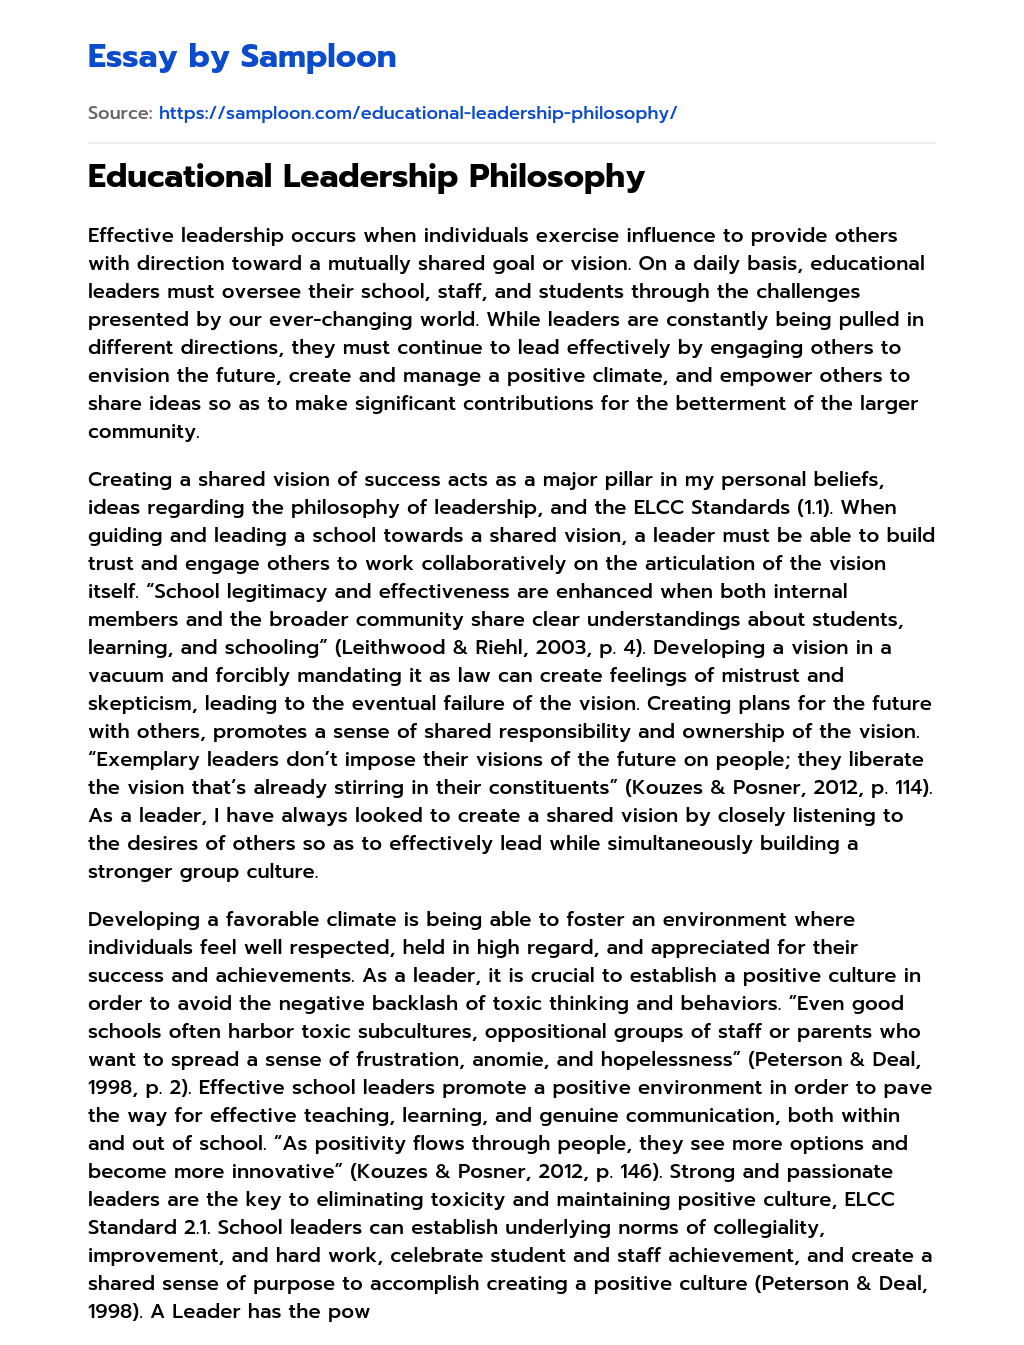 philosophy of leadership in education essay